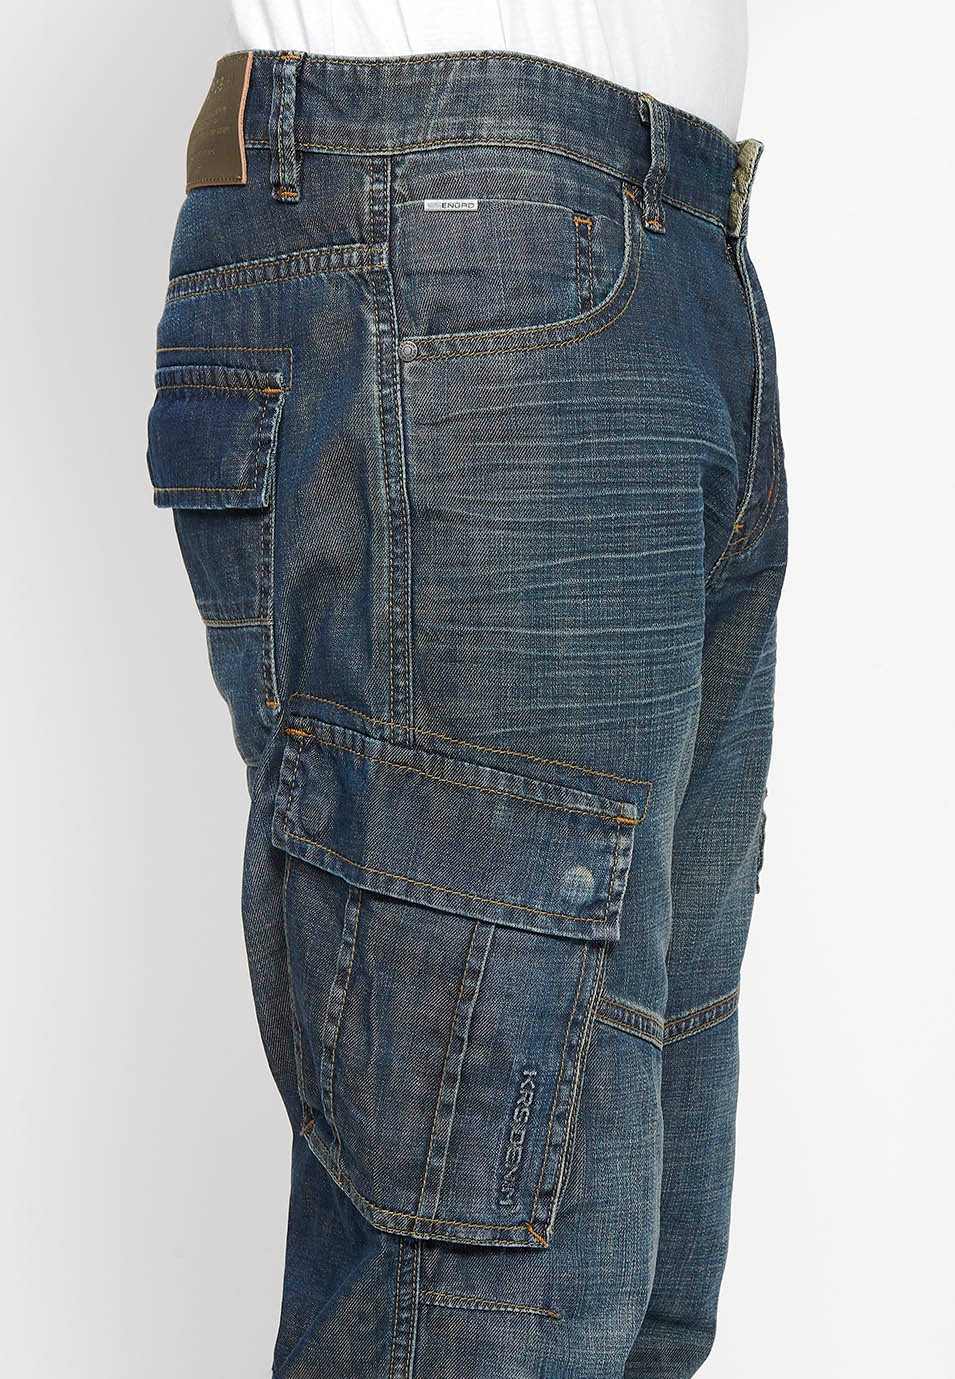 Pantalons càrrec llarg amb Tancament davanter amb cremallera i botó amb Butxaques laterals amb solapa de Color Blau Fosc per a Home 8